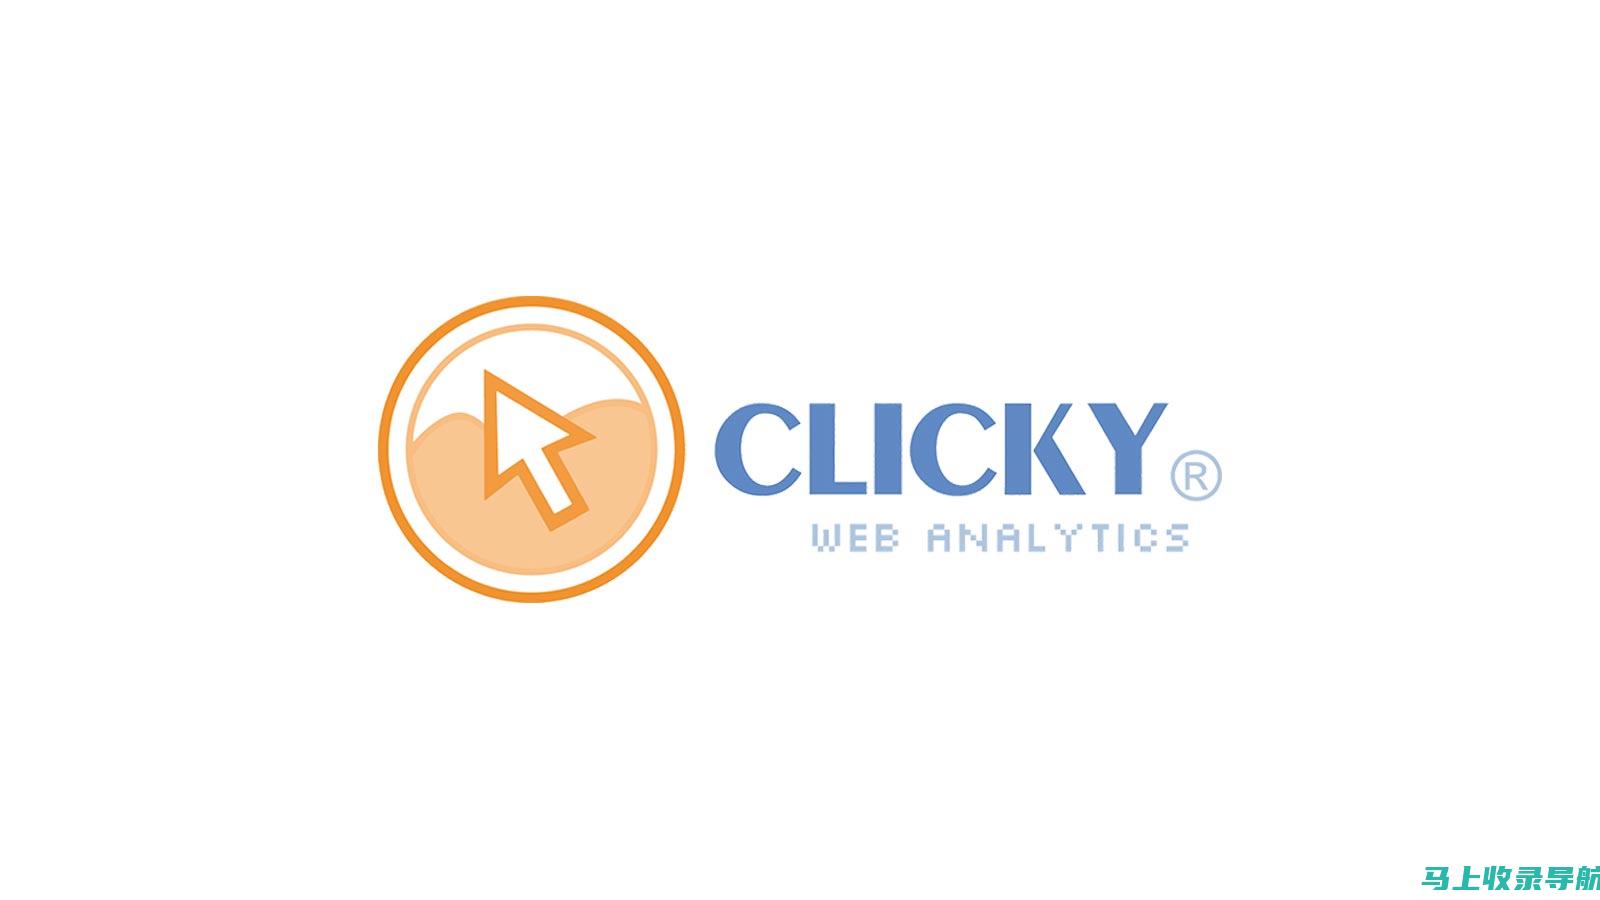 Clicky：实时网站分析工具，提供直观的界面。